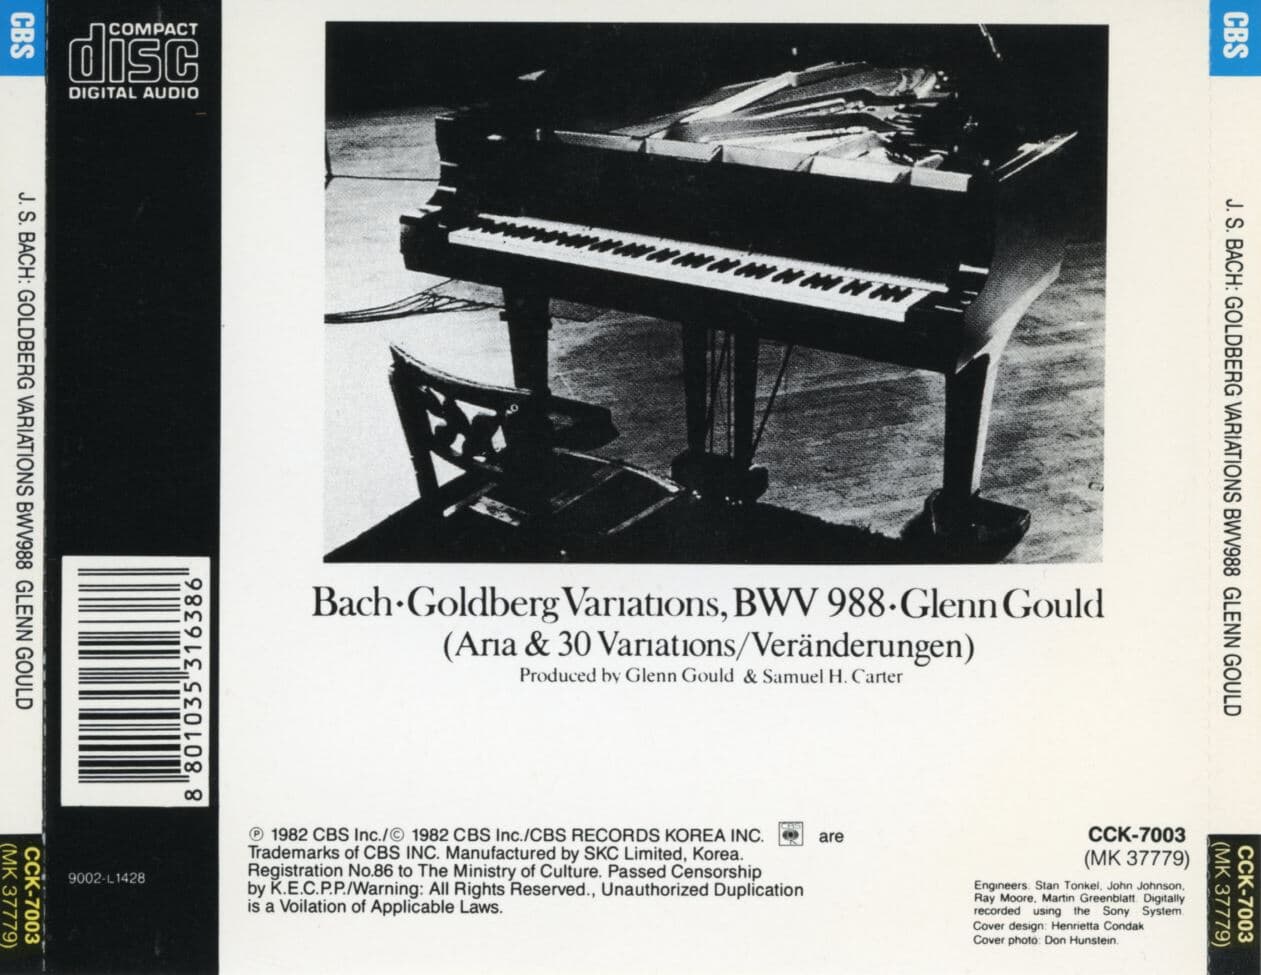 글렌 굴드 - Glenn Gould - Bach The Goldberg Variations